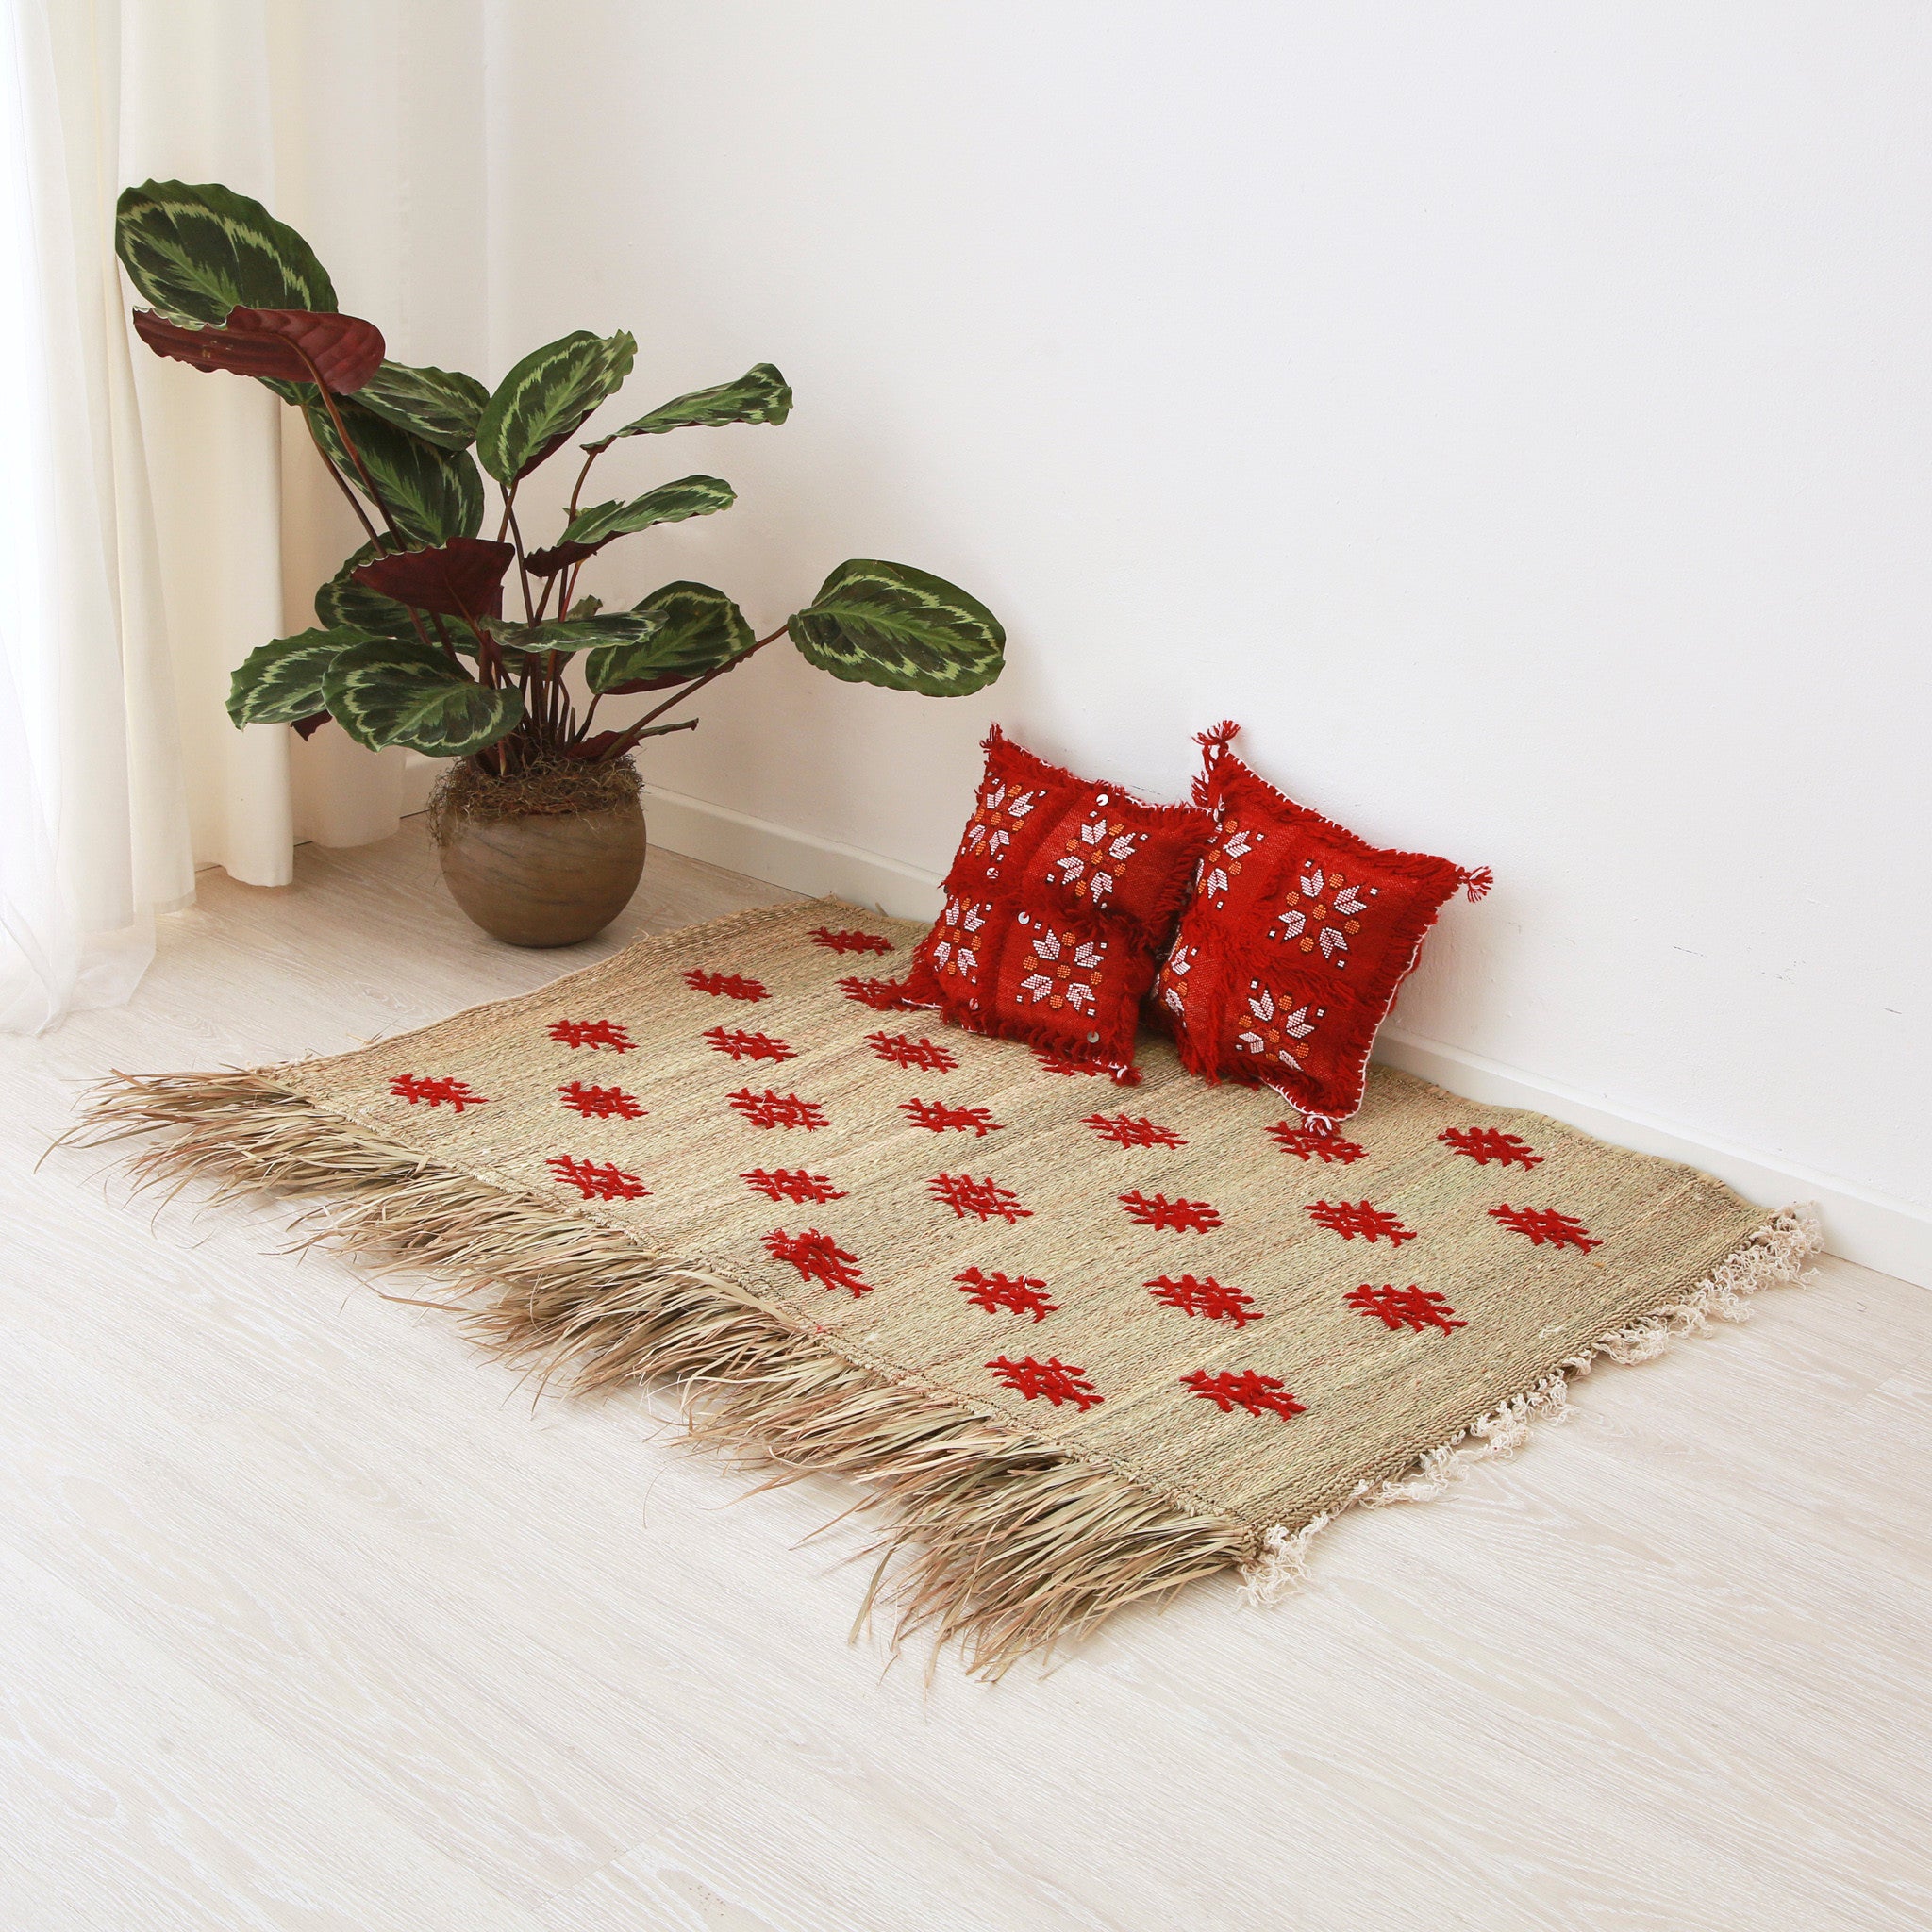 piccola stuoia hassira intrecciata con paglia di palma e ricamata con simboli in lana rossa su pavimento con due piccoli cuscini rossi e quadrati sopra